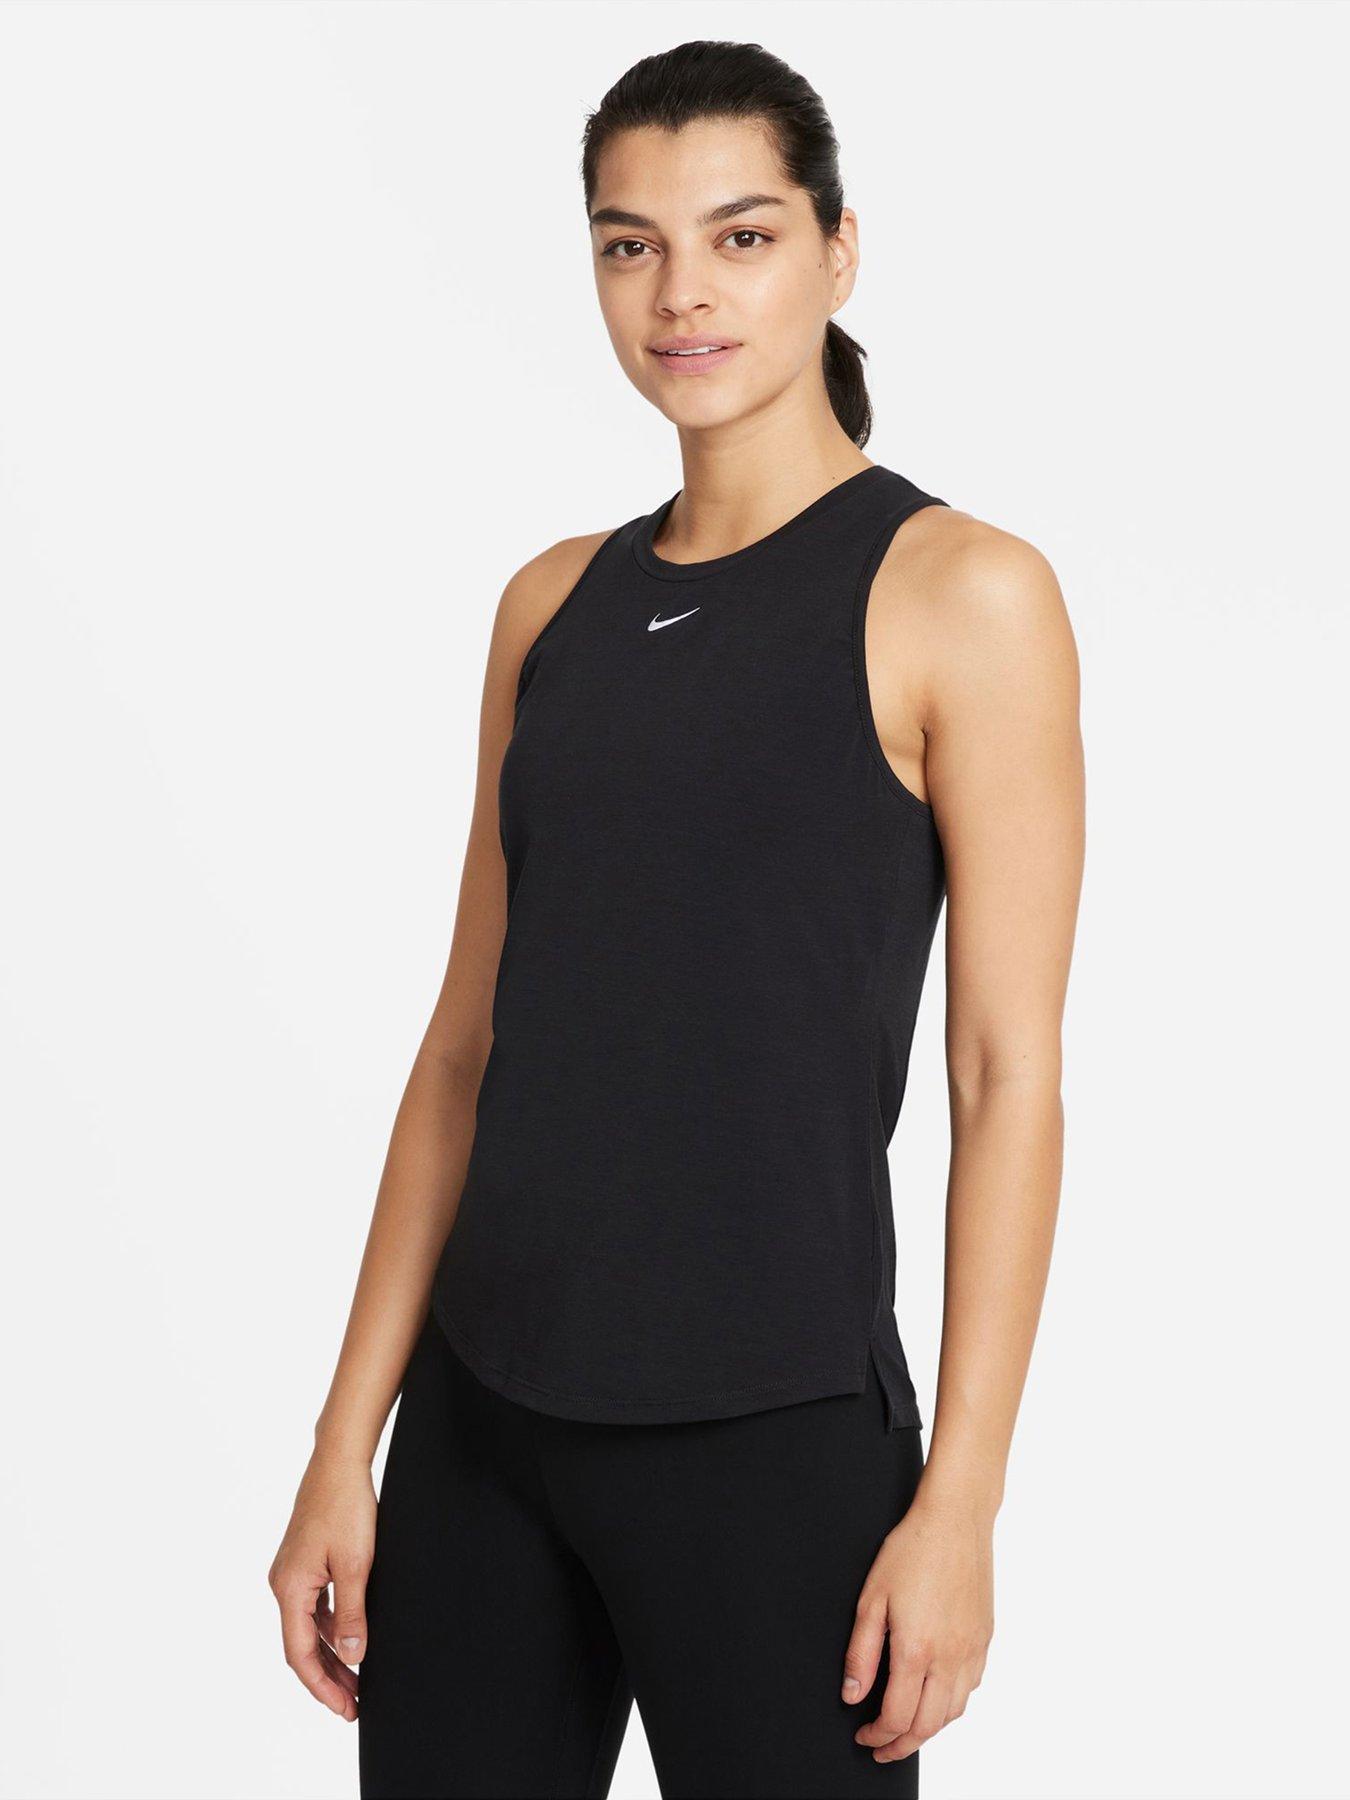 Nike Dri-FIT One Luxe Women's Standard Fit Tank Top - Black